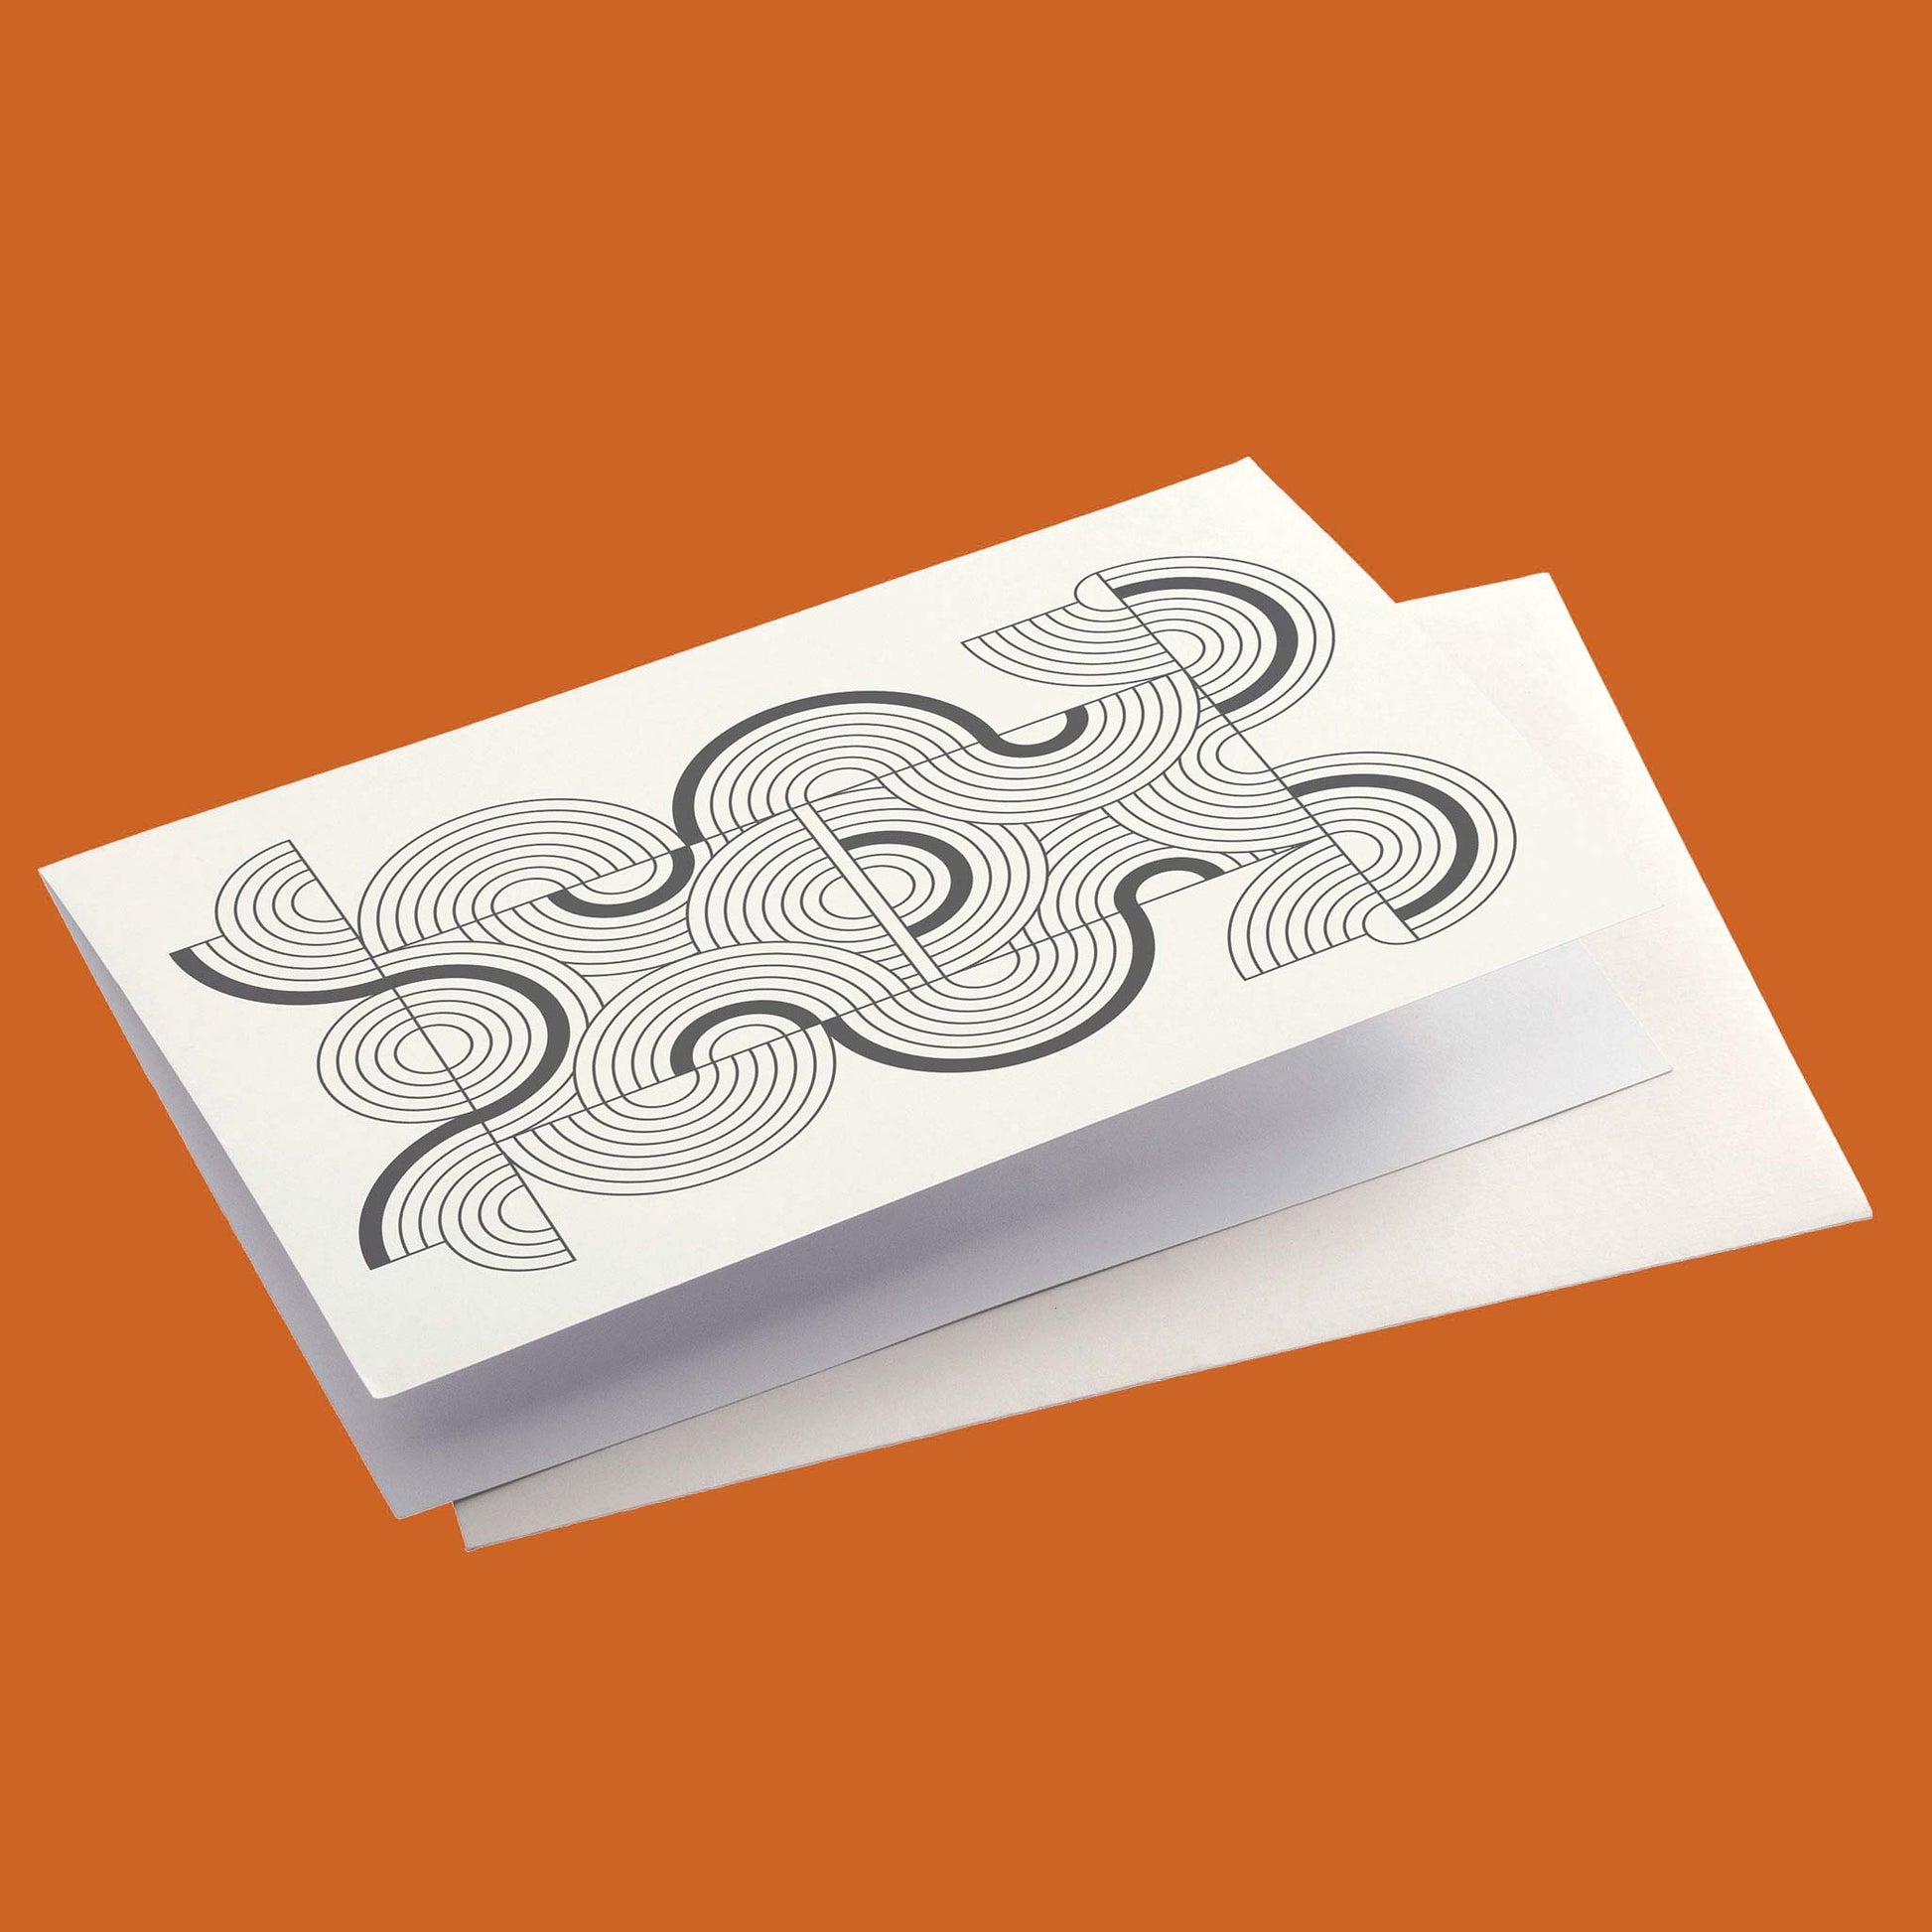 Productafbeelding, foto ontwerp 4 uit de set, gepresenteerd met envelop op een oranje/bruine achtergrond